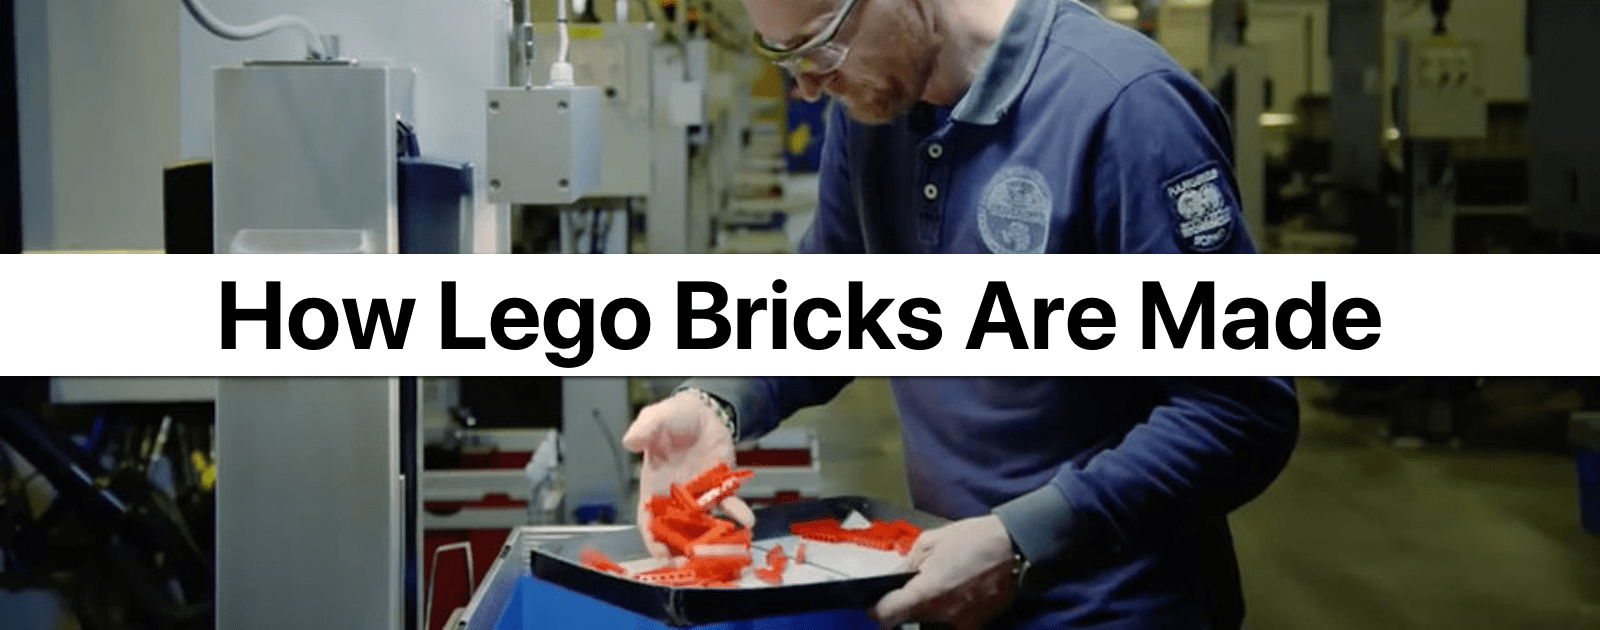 Cómo se hacen los ladrillos de Lego